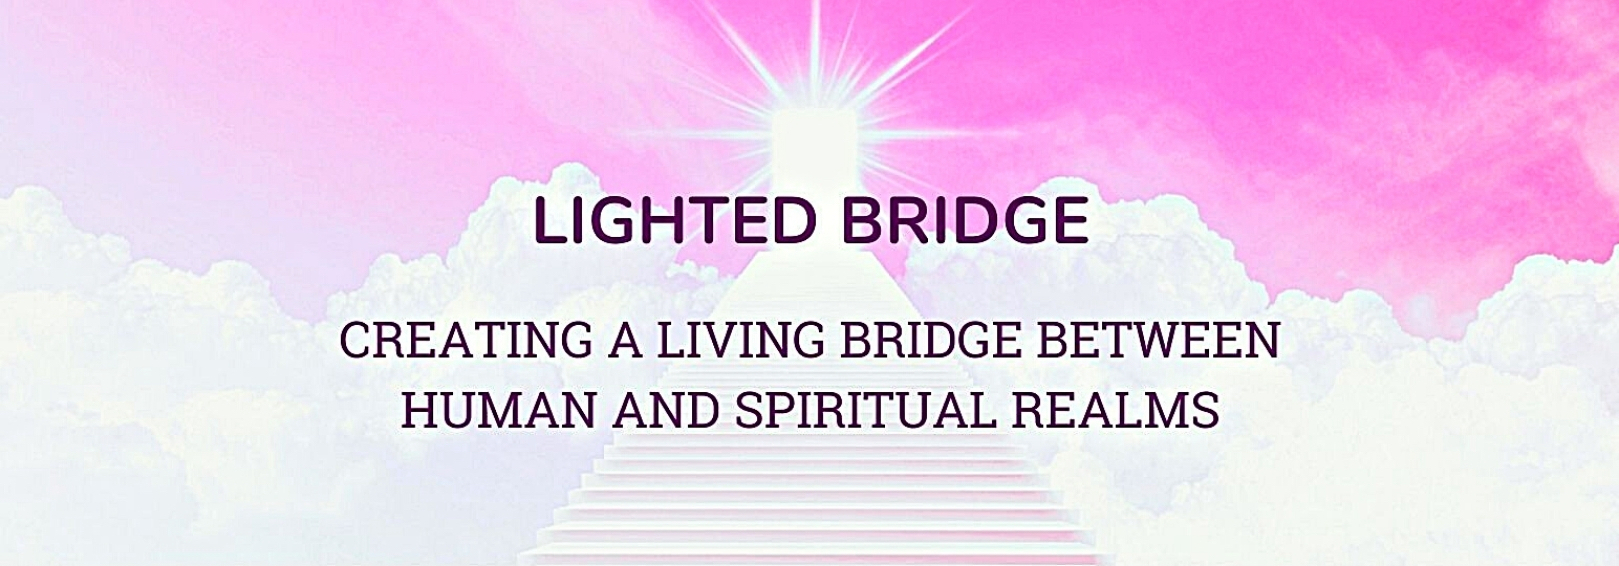 9.  Lighted Bridge: Intro Goes Here